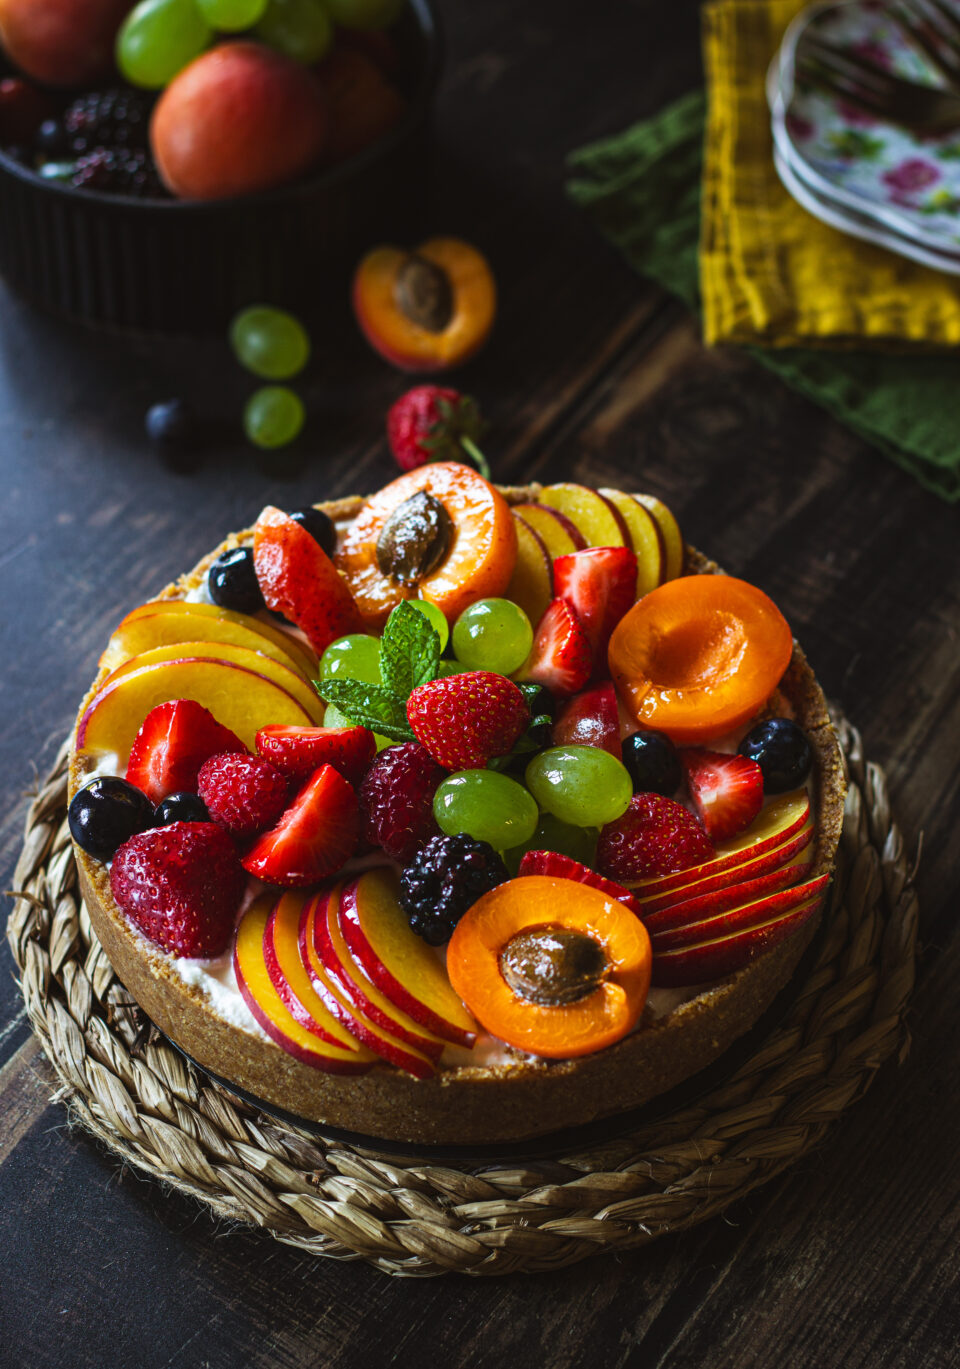 Cheesecake con ricotta, miele e frutta fresca